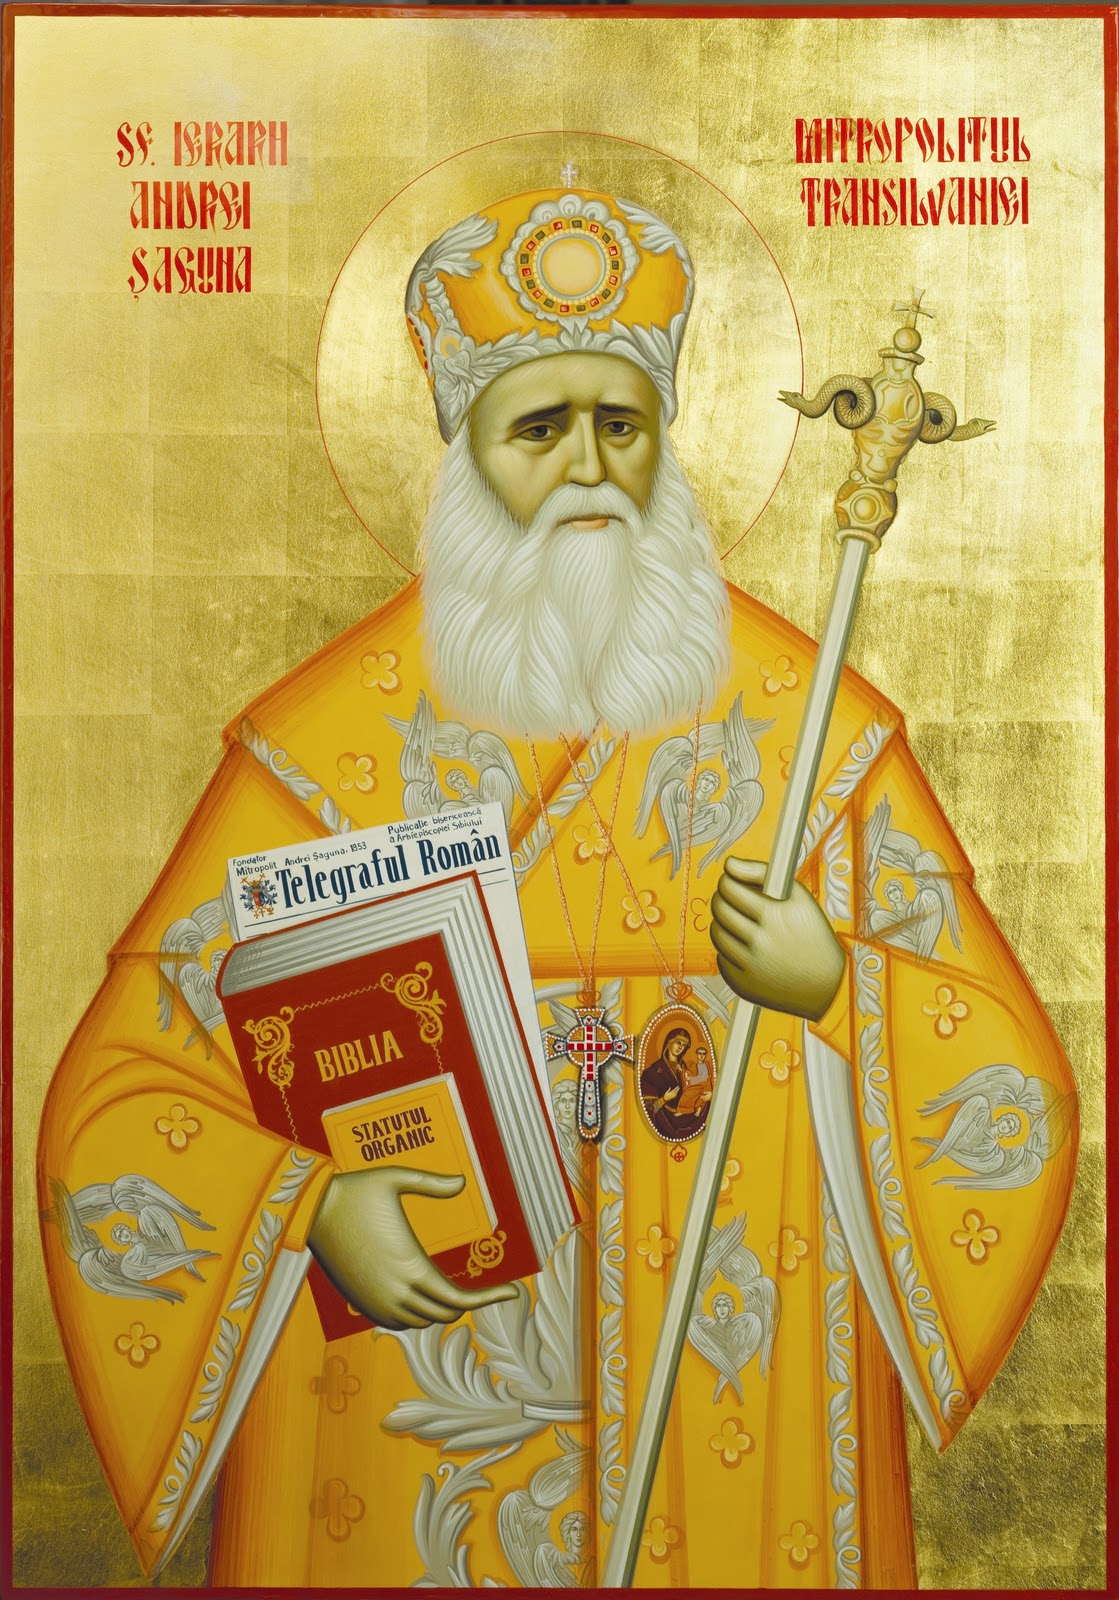 Personalitatea Mitropolitului-Canonist Andrei Șaguna și  lucrările sistematice de Drept Canonic